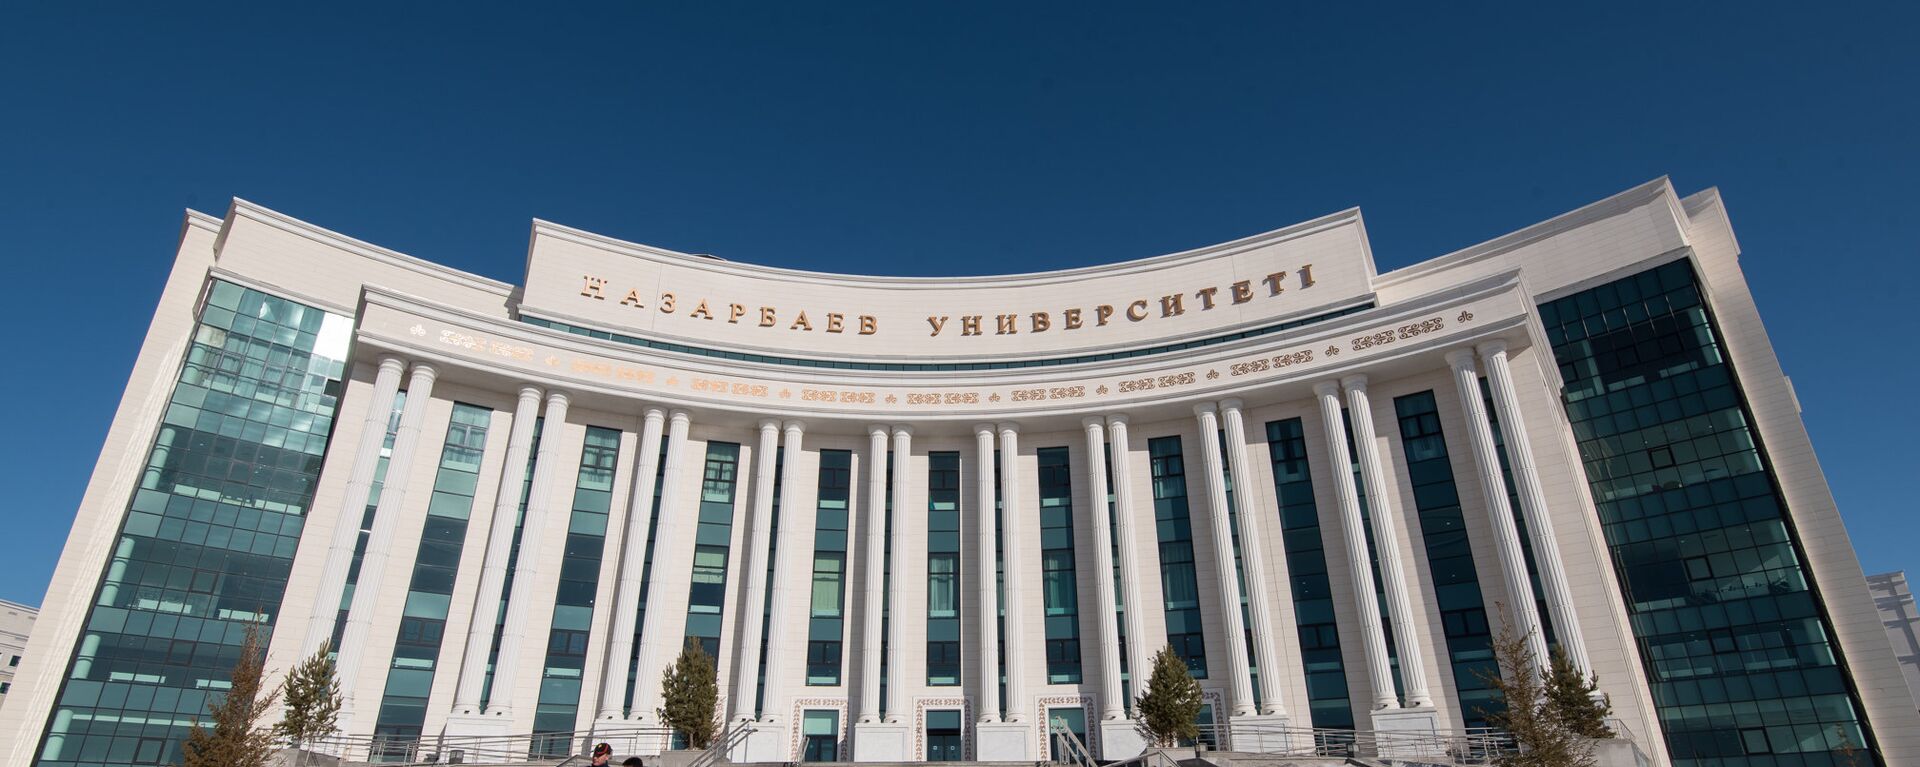 Назарбаев университет - Sputnik Казахстан, 1920, 16.09.2021